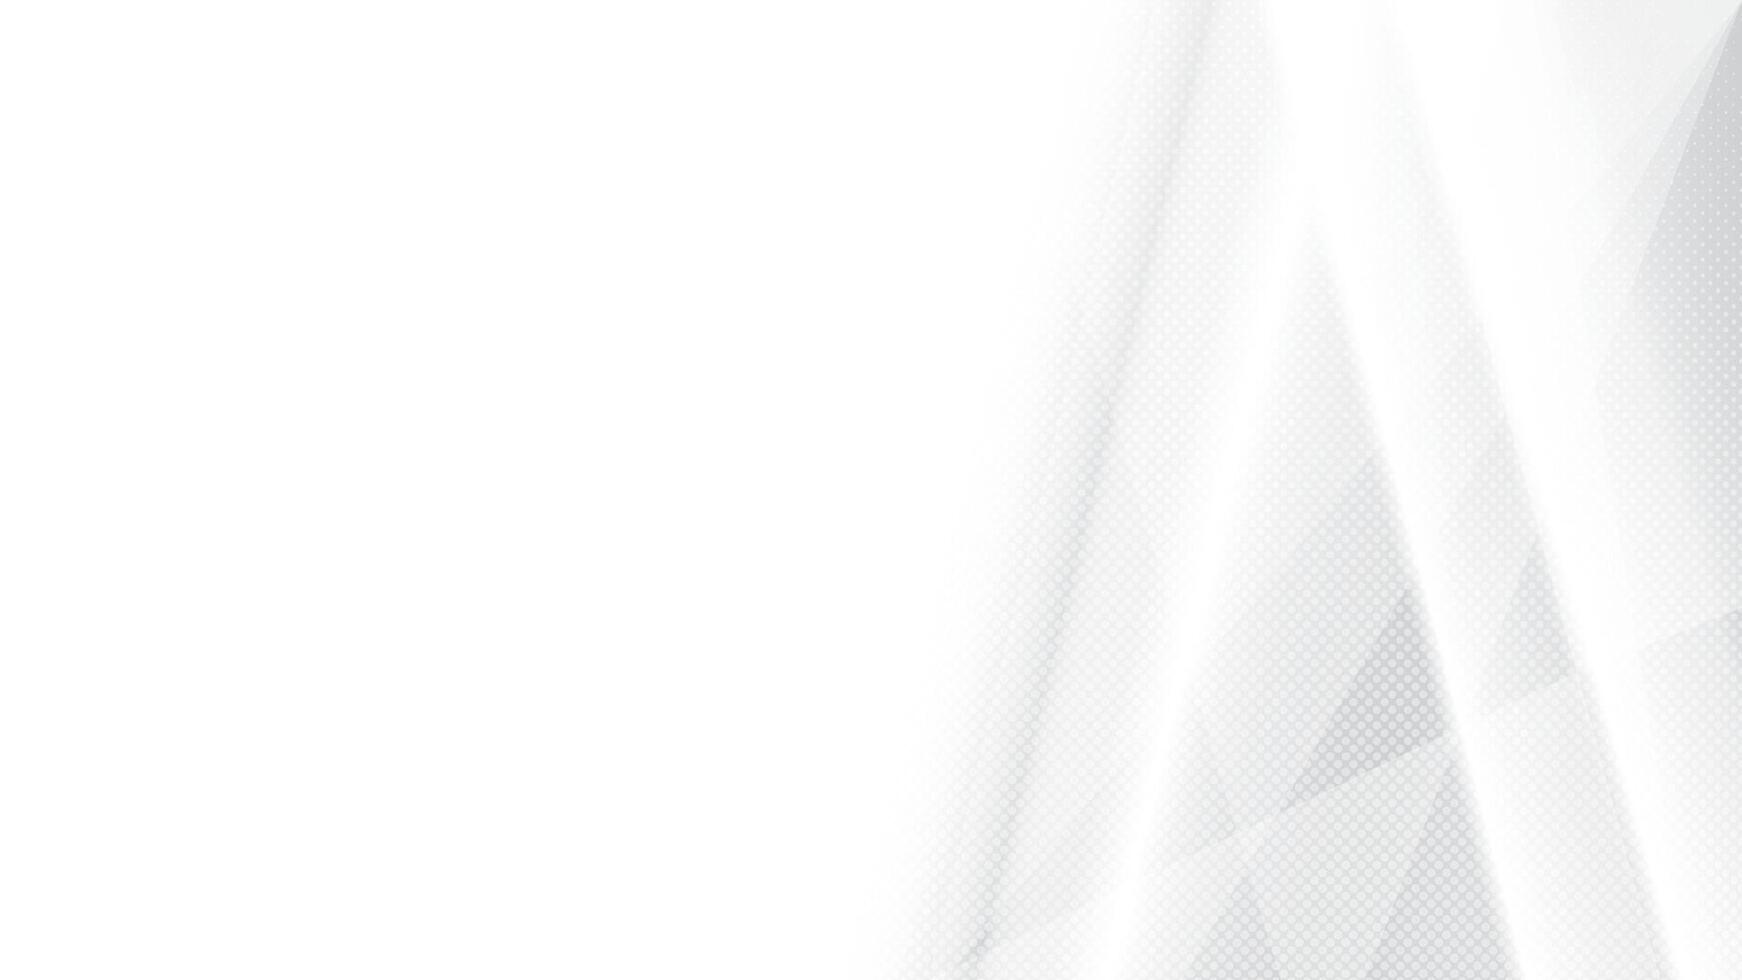 abstrakt Weiß und grau Farbe, modern Design Streifen Hintergrund mit geometrisch gestalten und Halbton Wirkung. Vektor Illustration.